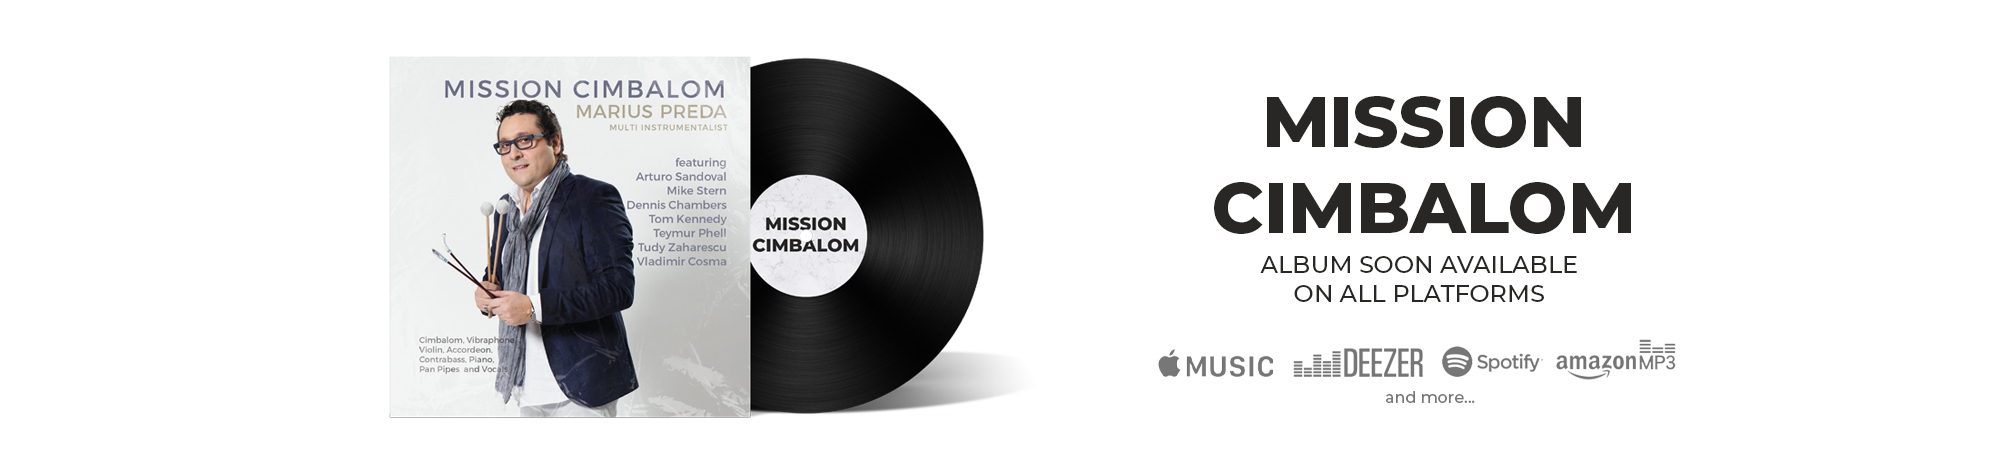 Mission Cimbalom Album